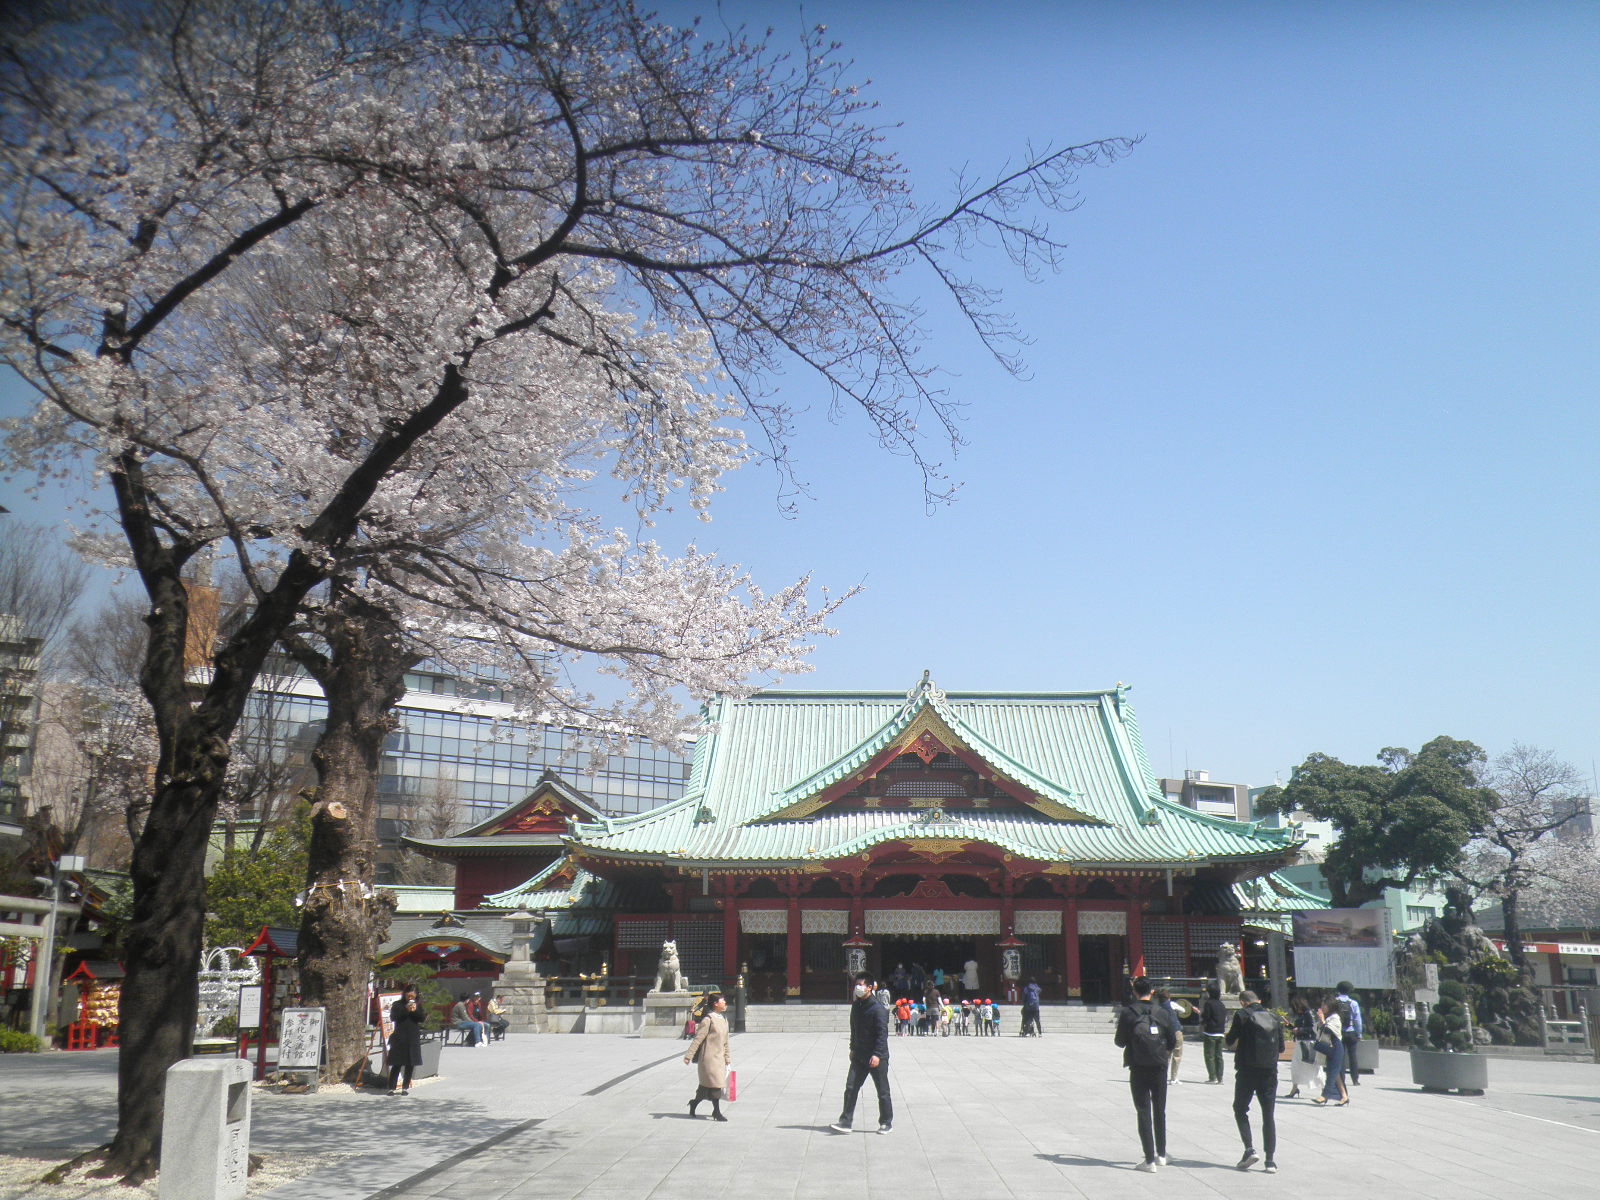 参道左に大きな桜の木が2本並んで咲き、中央に青緑の屋根をした神田神社が見える写真